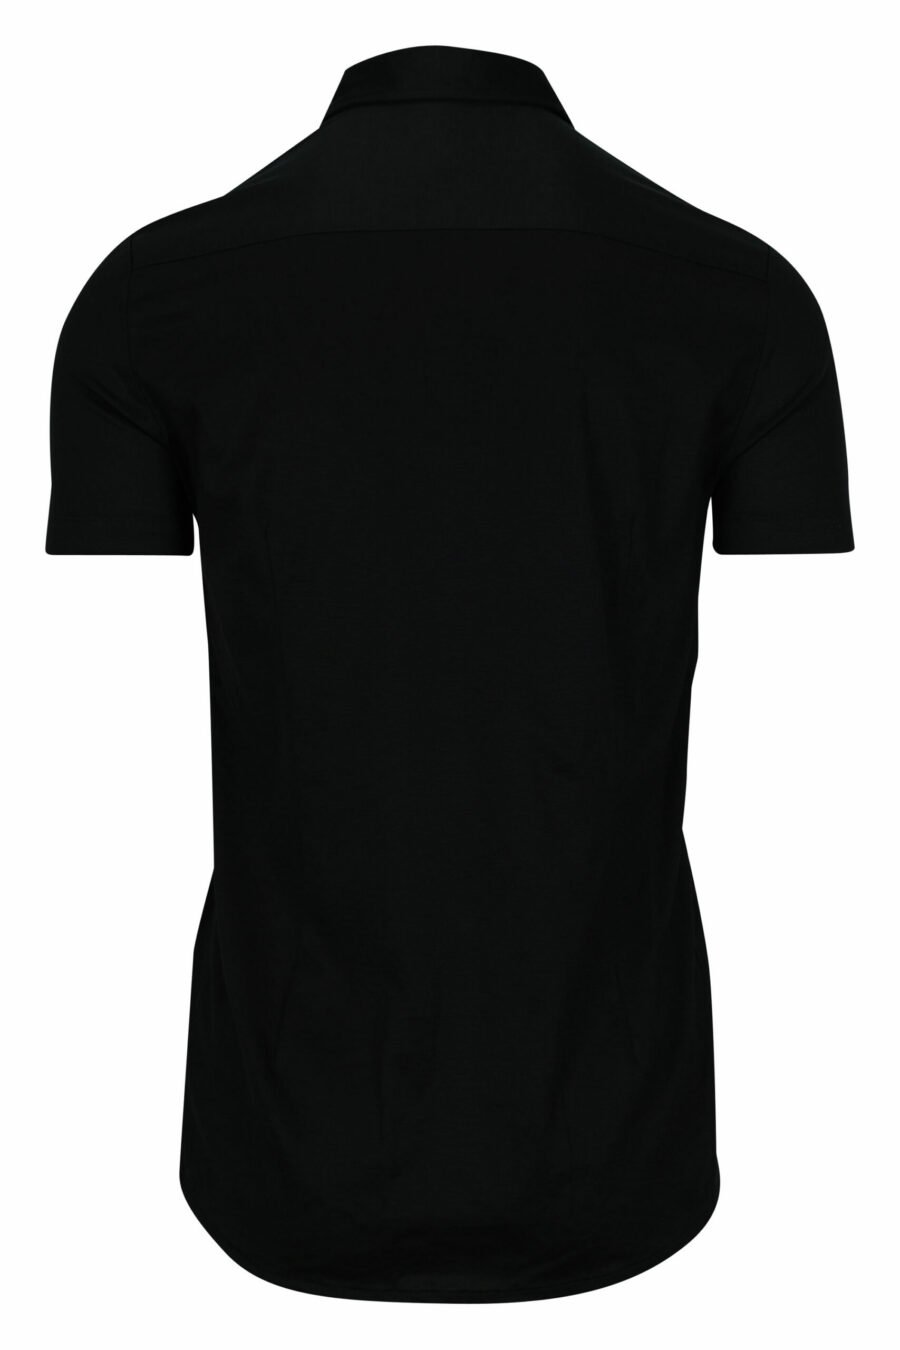 Schwarzes Kurzarmhemd mit Adler-Mini-Logo - 8056861420206 1 skaliert